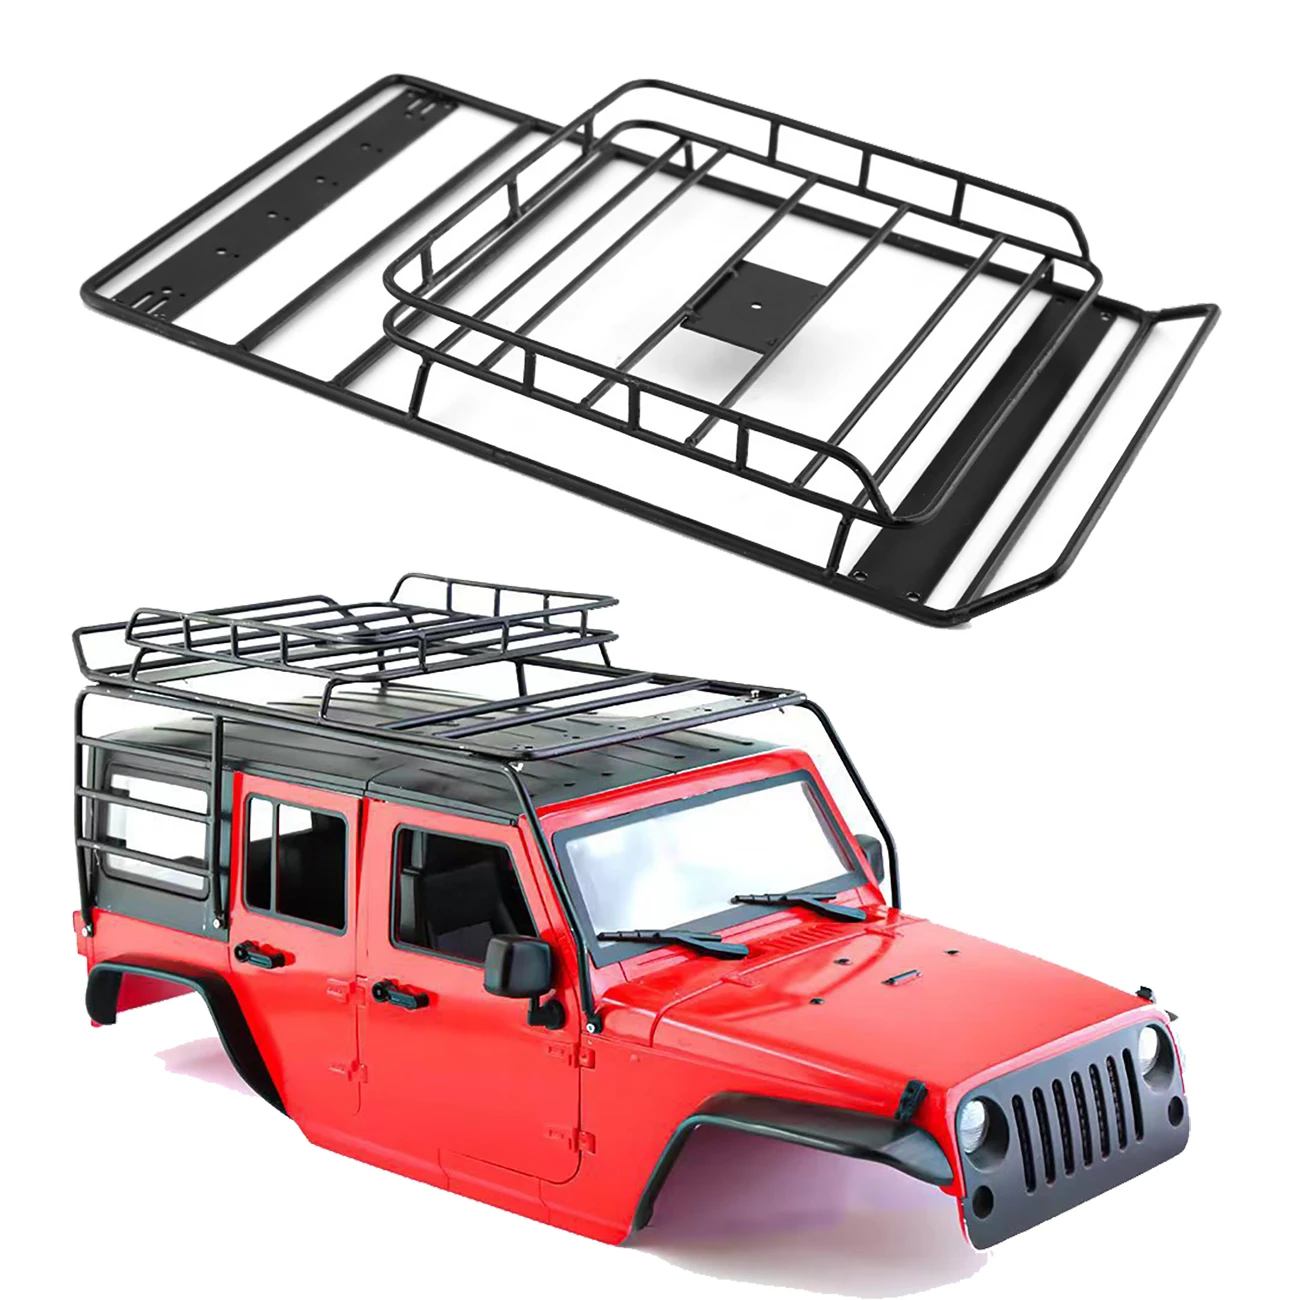 

1/10 металлический багажник на крышу для TRX4 SCX10 TRX4 313 Wrangler Cherokee, сплит багажник, имитационная модель, деталь для скалолазания и обновления автомобиля